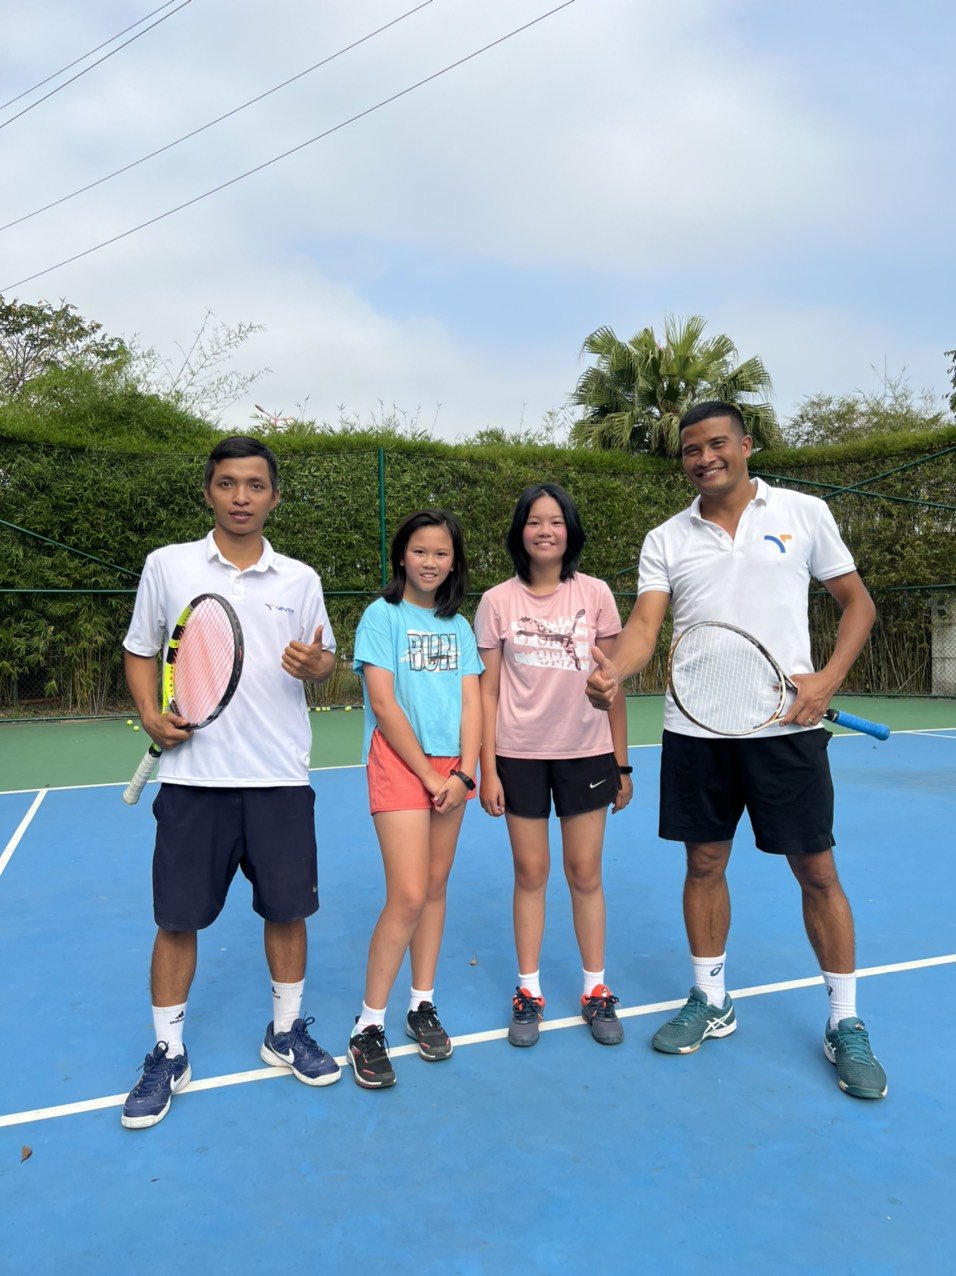 Khoá học Tennis cơ bản nhóm 2 tại Hà Nội